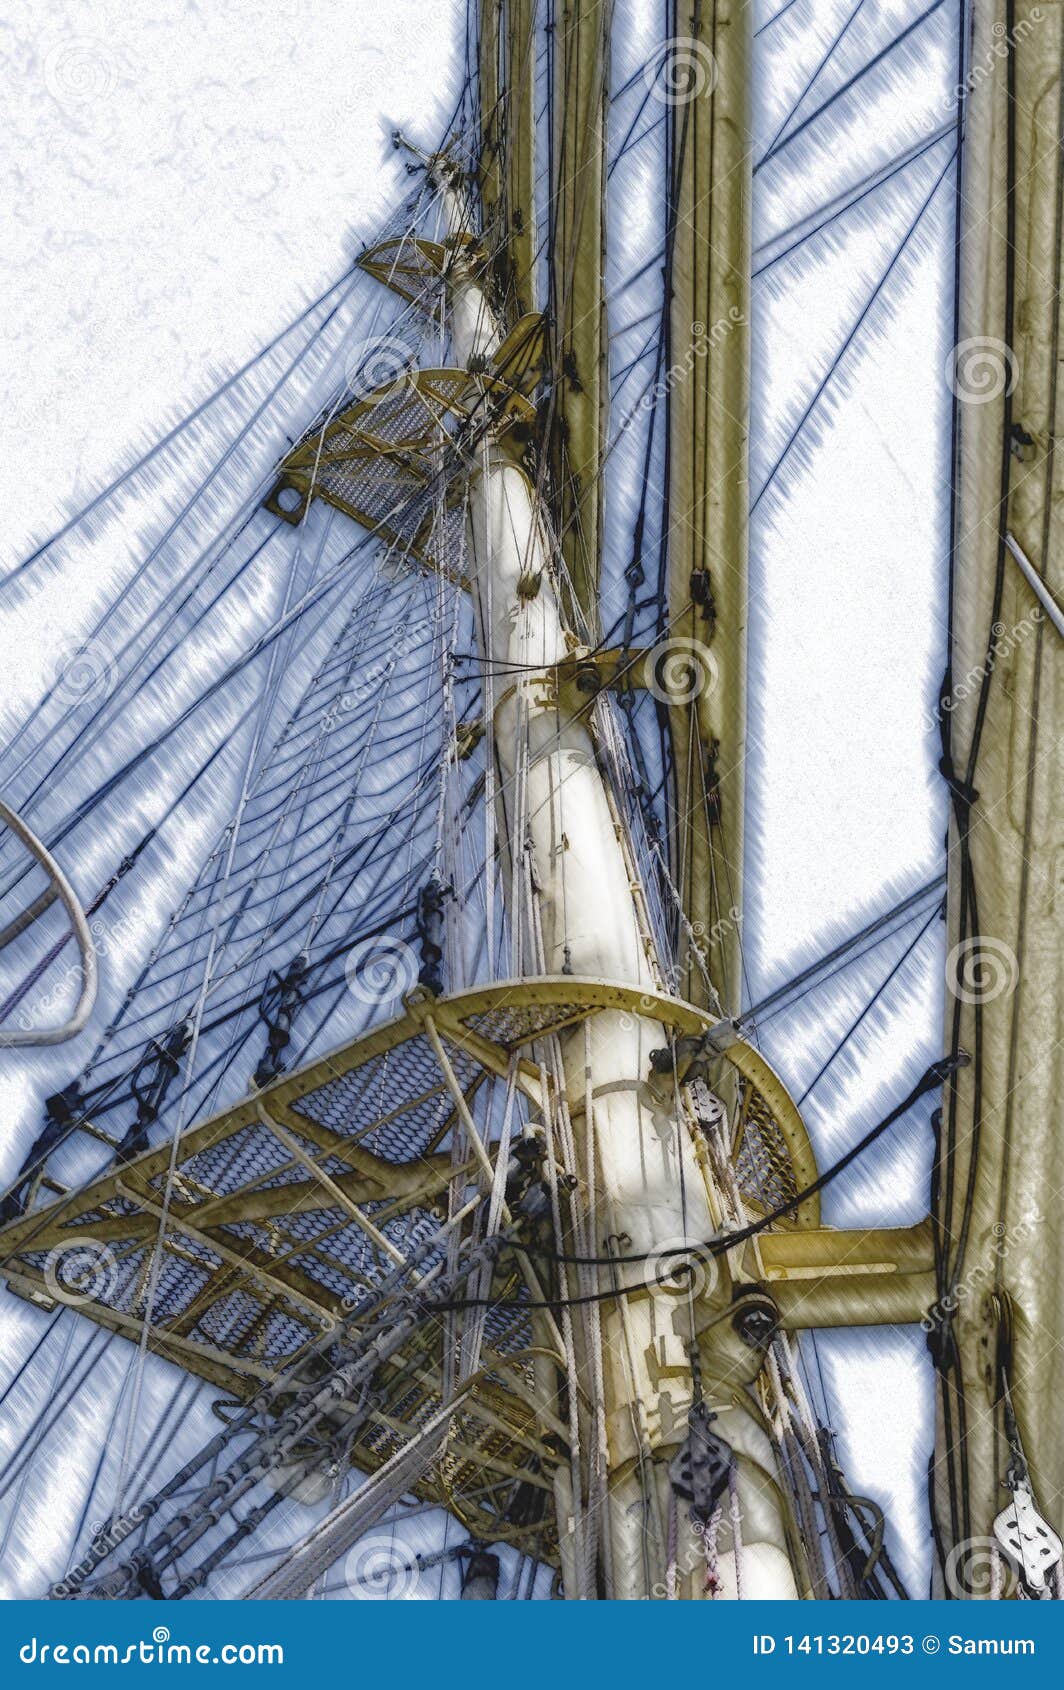 sailboats mast